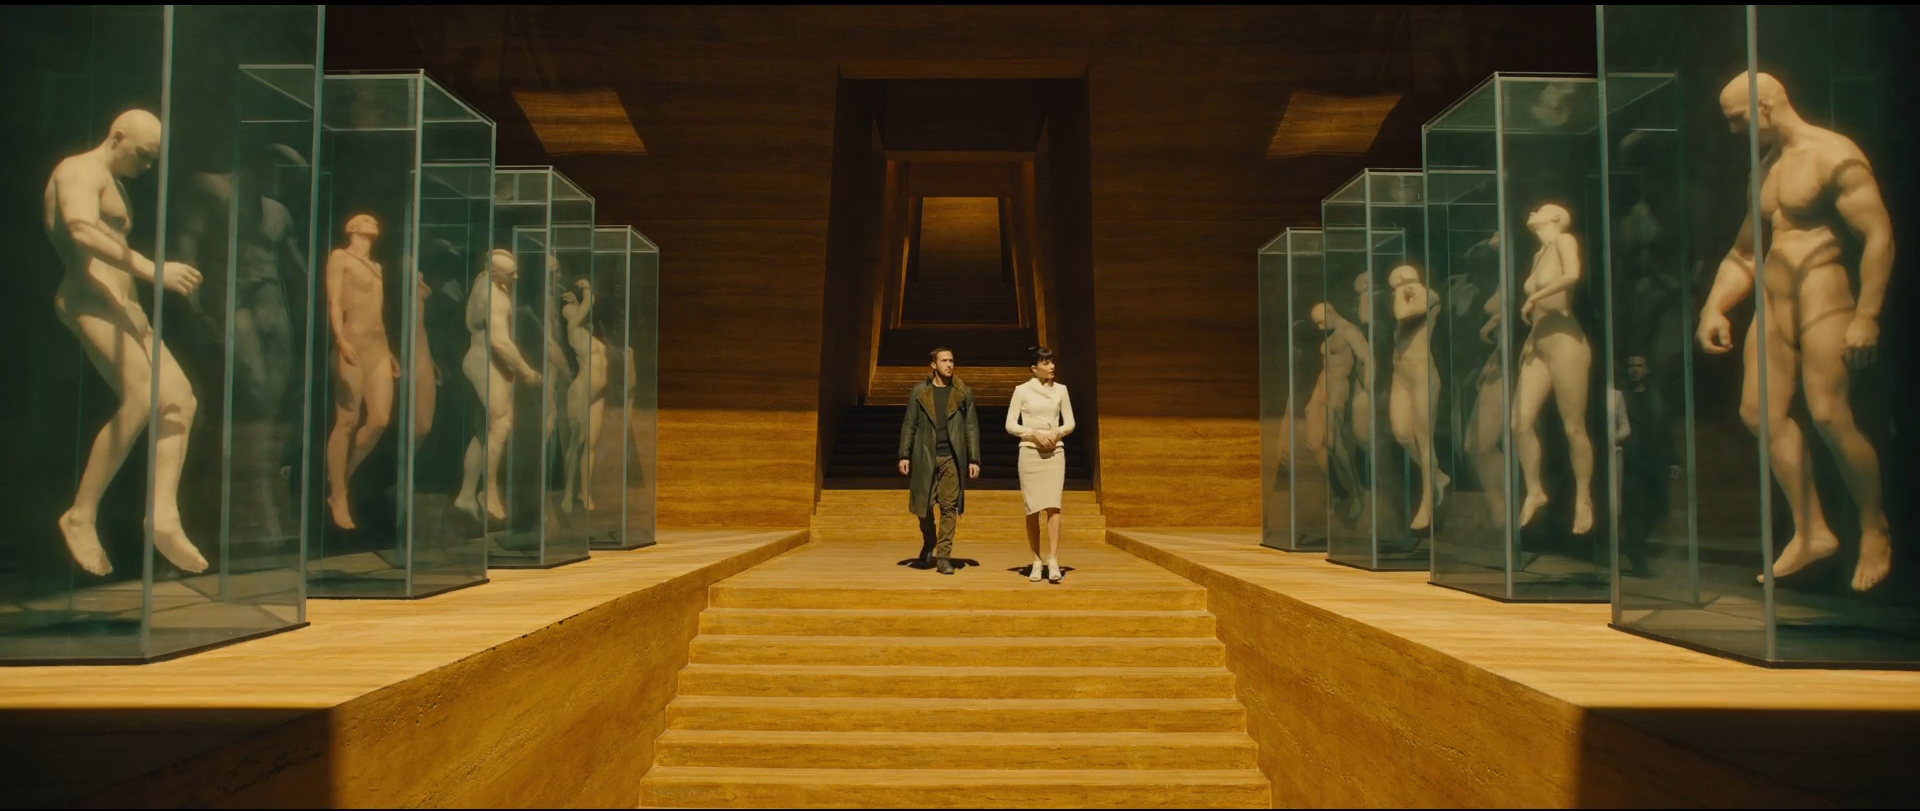 Rya Gosling e Sylvia Hoeks (Luv) caminha em direção a uma escada em um grande salão rodeado por aquários contendo corpos humanos